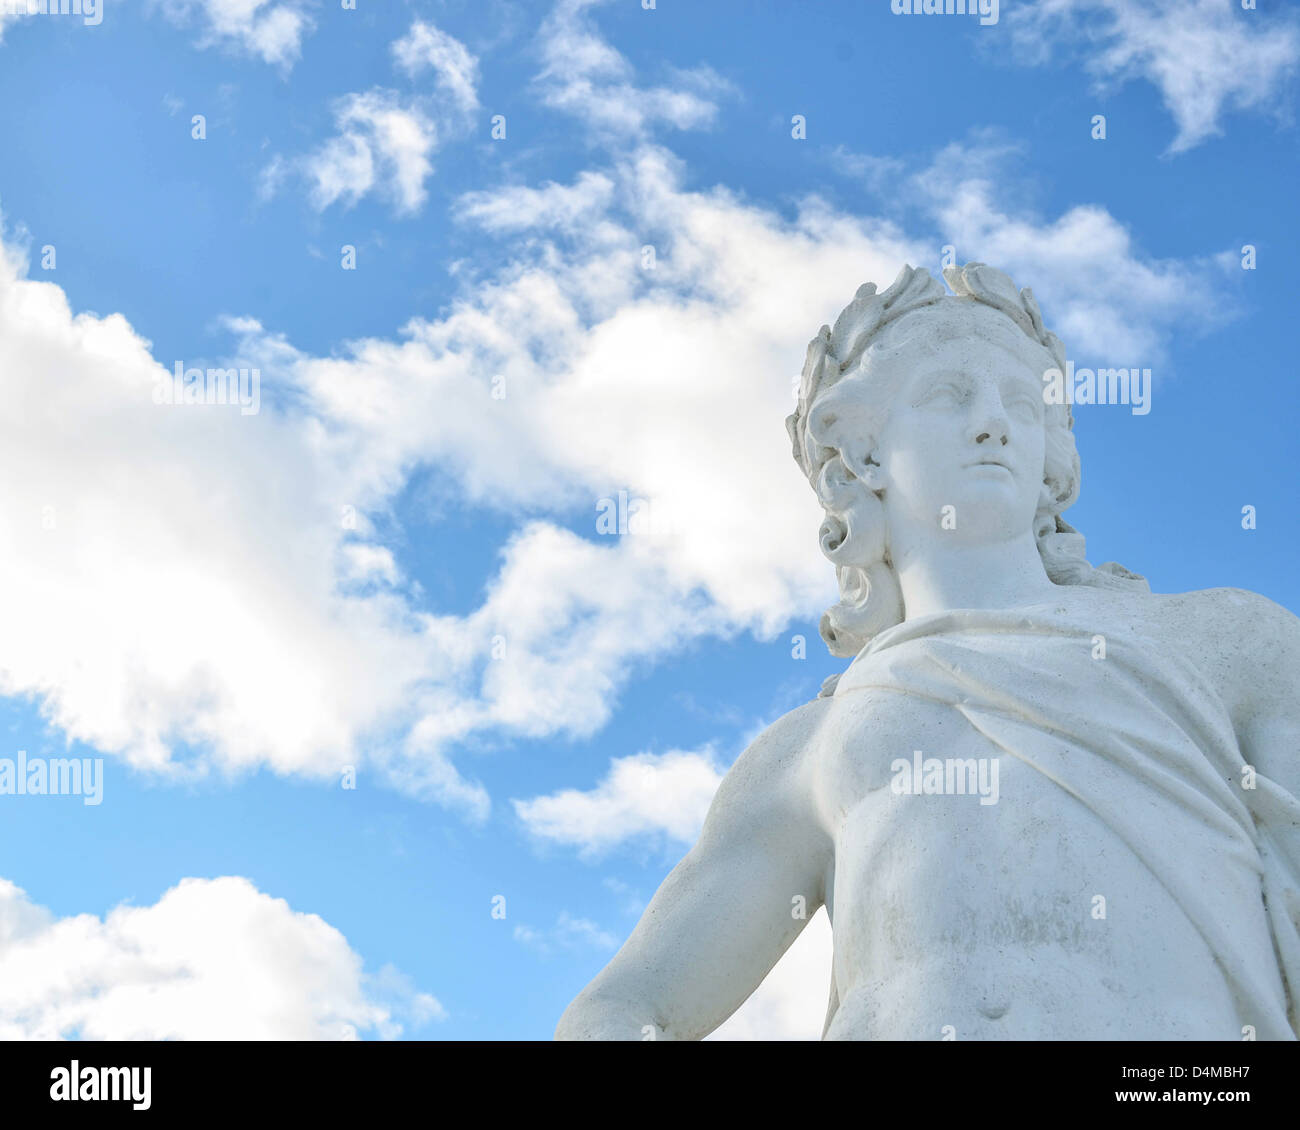 Statue at Drottningholms garden in Stockholm - Sweden Stock Photo